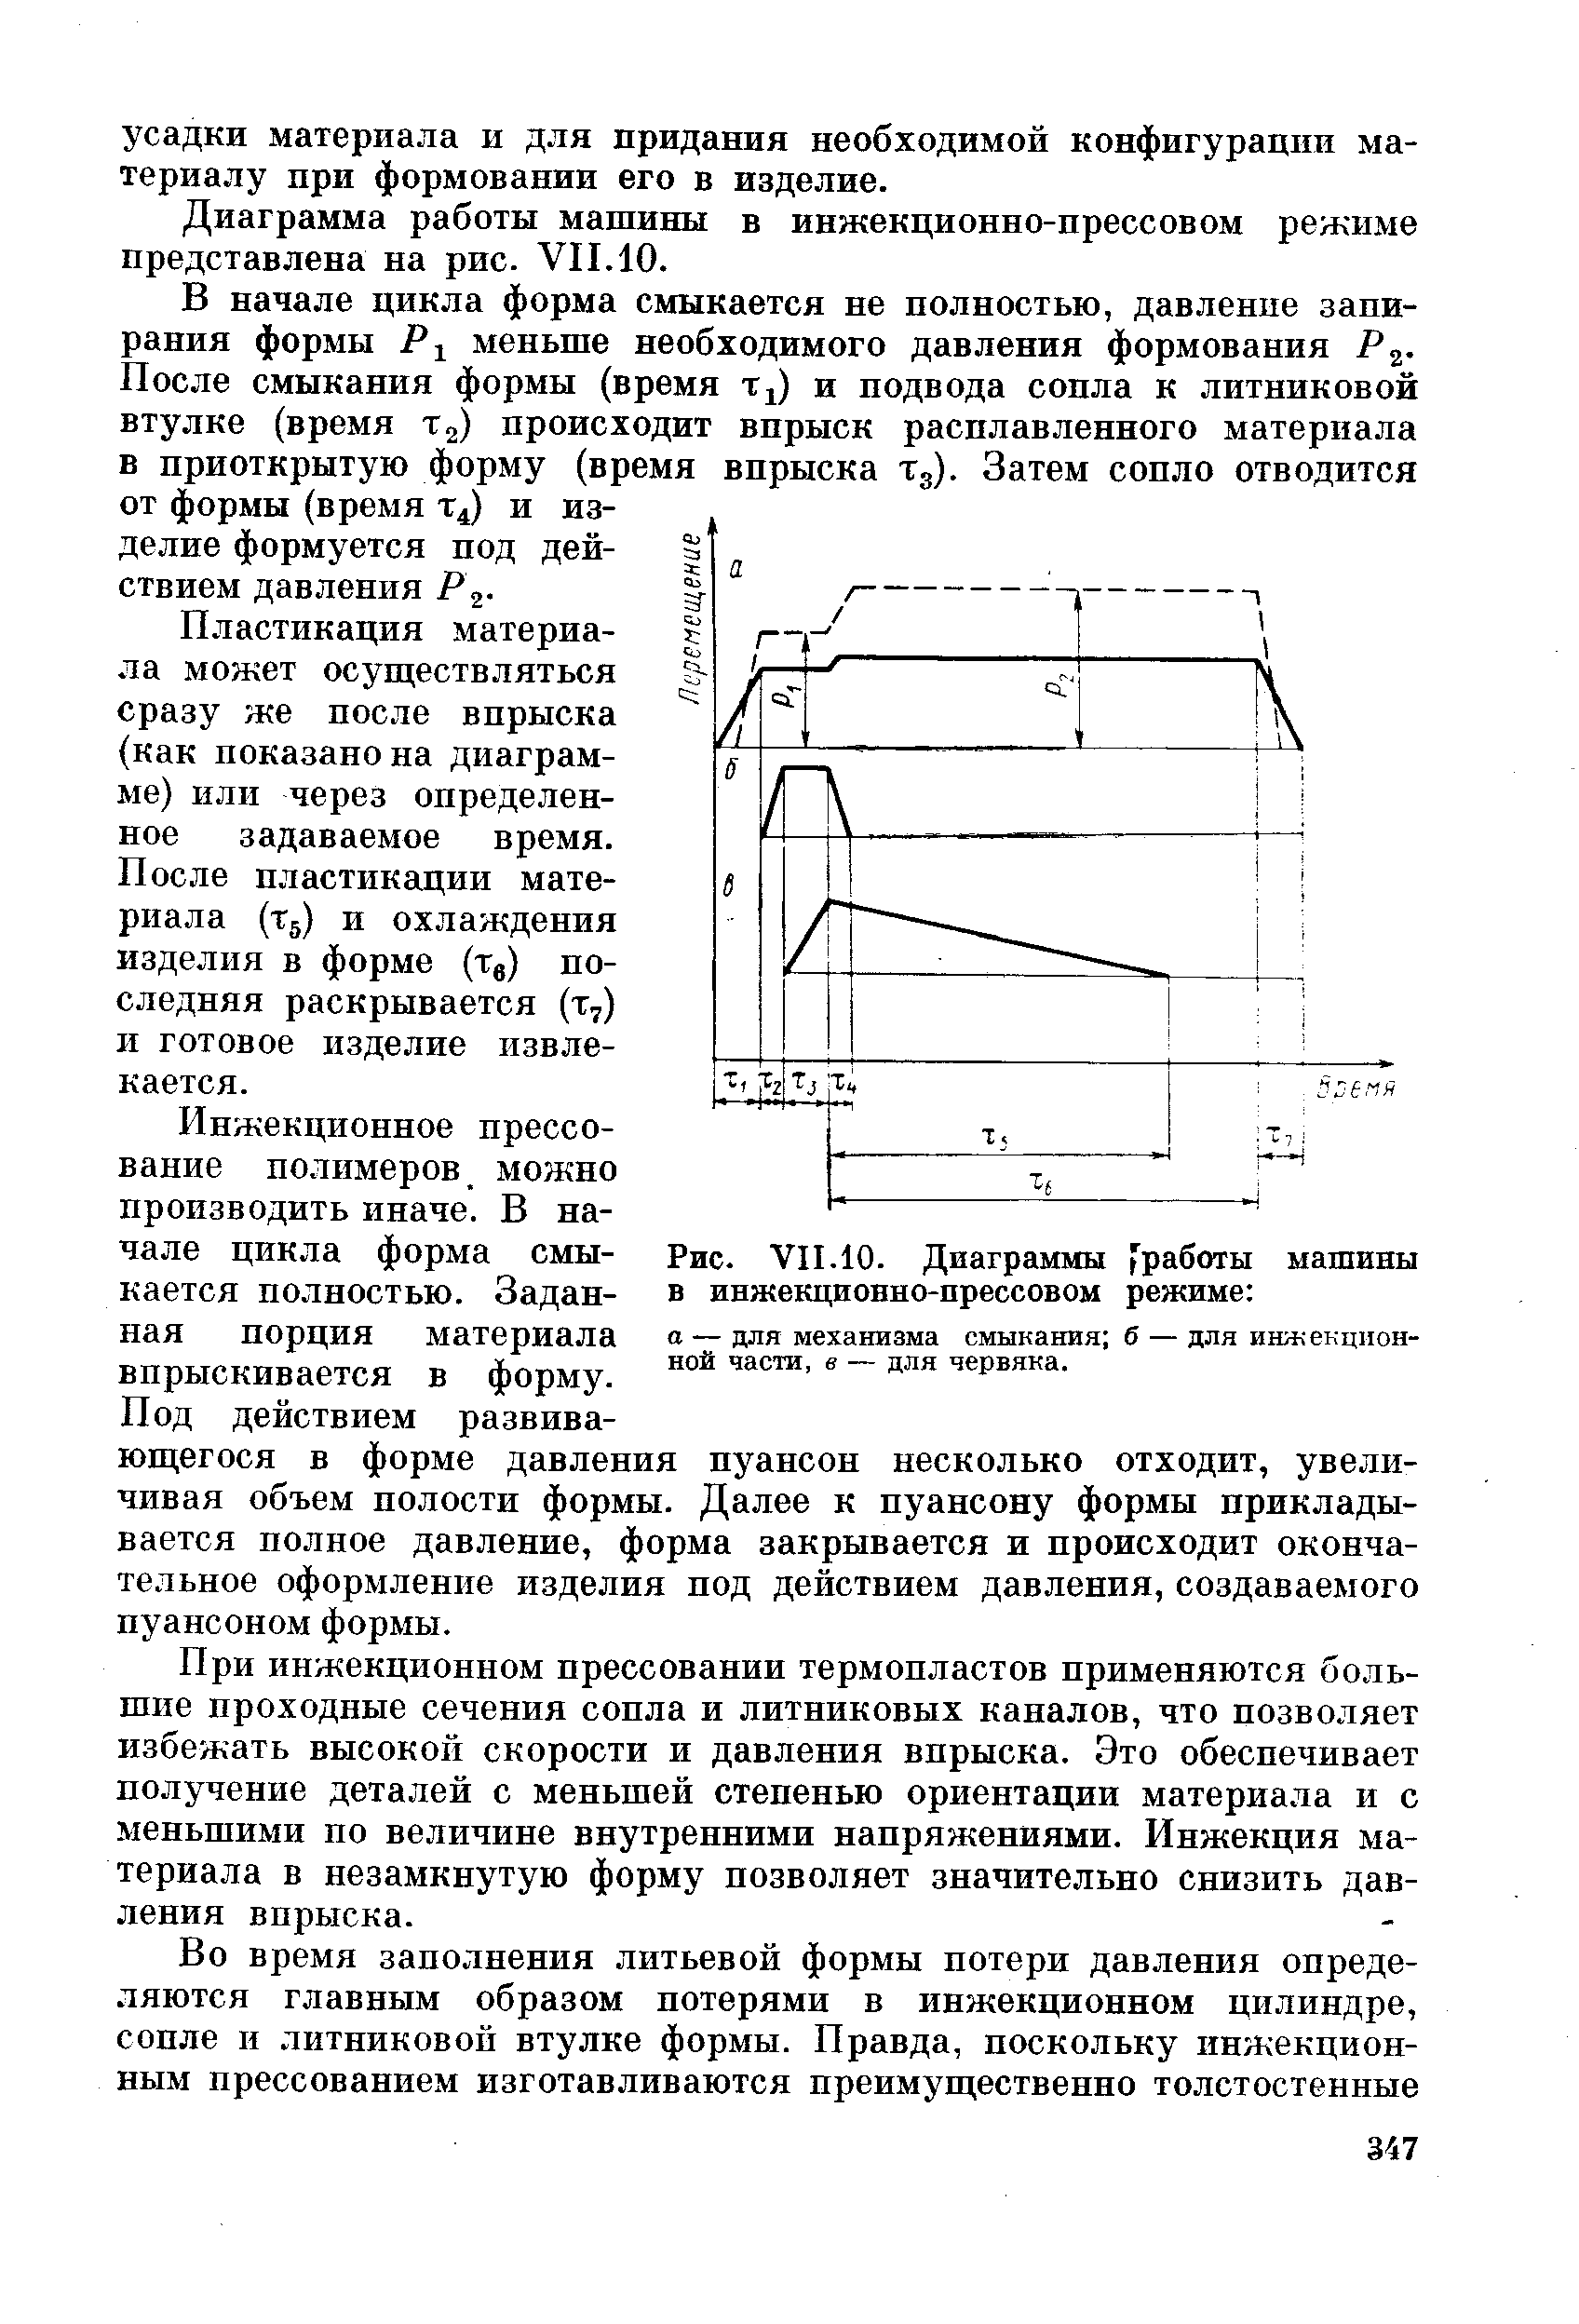 Диаграмма работы машины в инжекционно-прессовом режиме представлена на рис. VII.10.